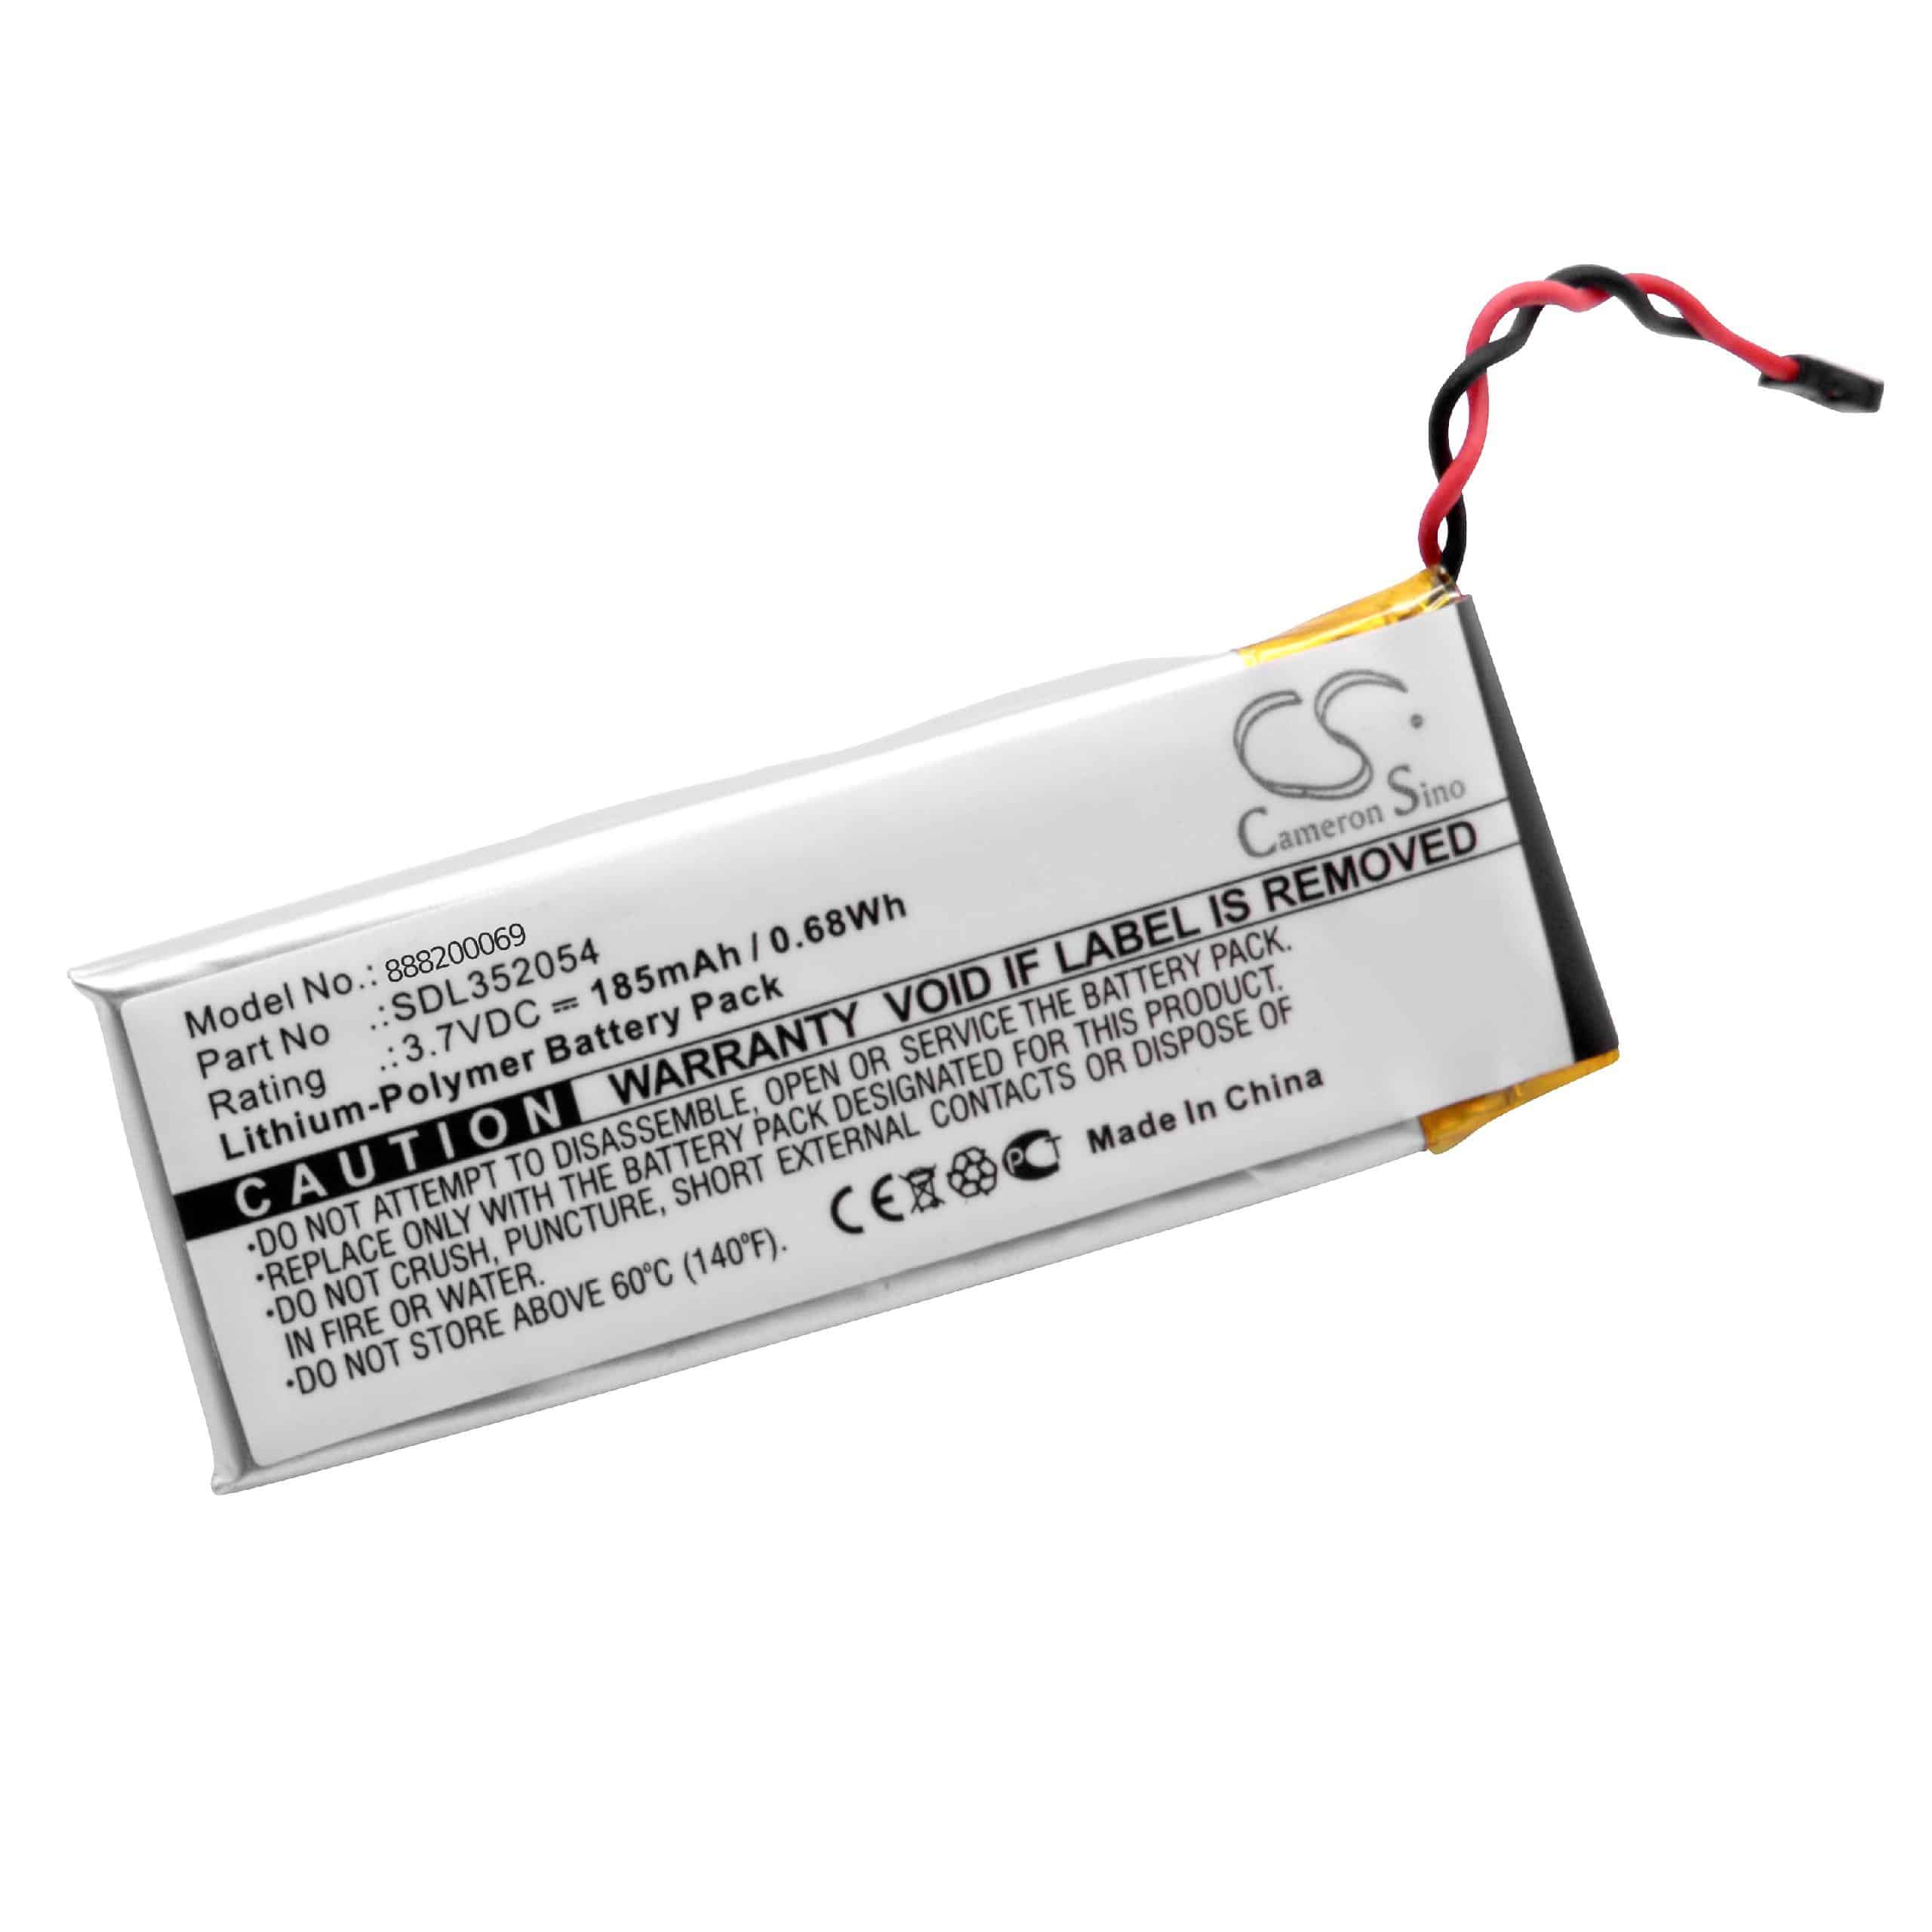 Battery Replacement for Flir SDL352054 - 185mAh, 3.7V, Li-polymer